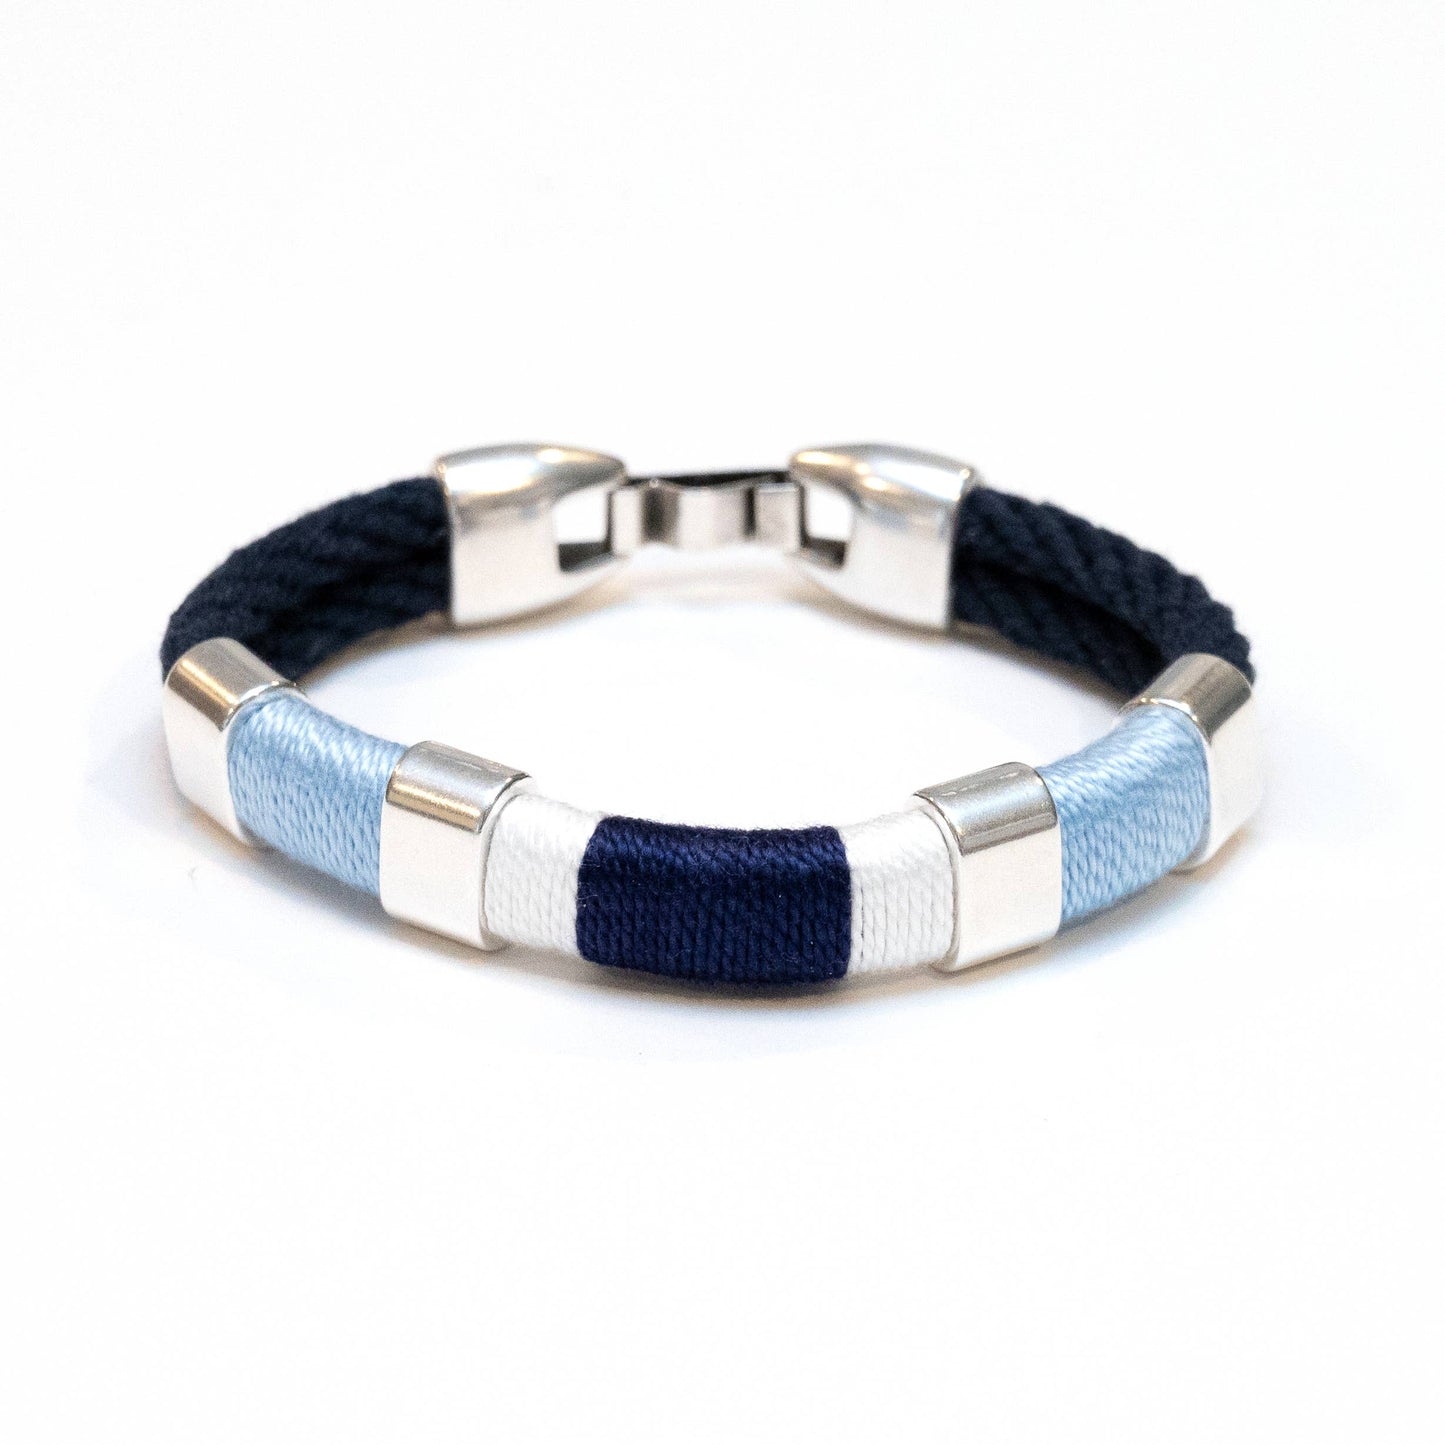 Newbury Bracelet - Navy/Light Blue/White/Navy/Silver